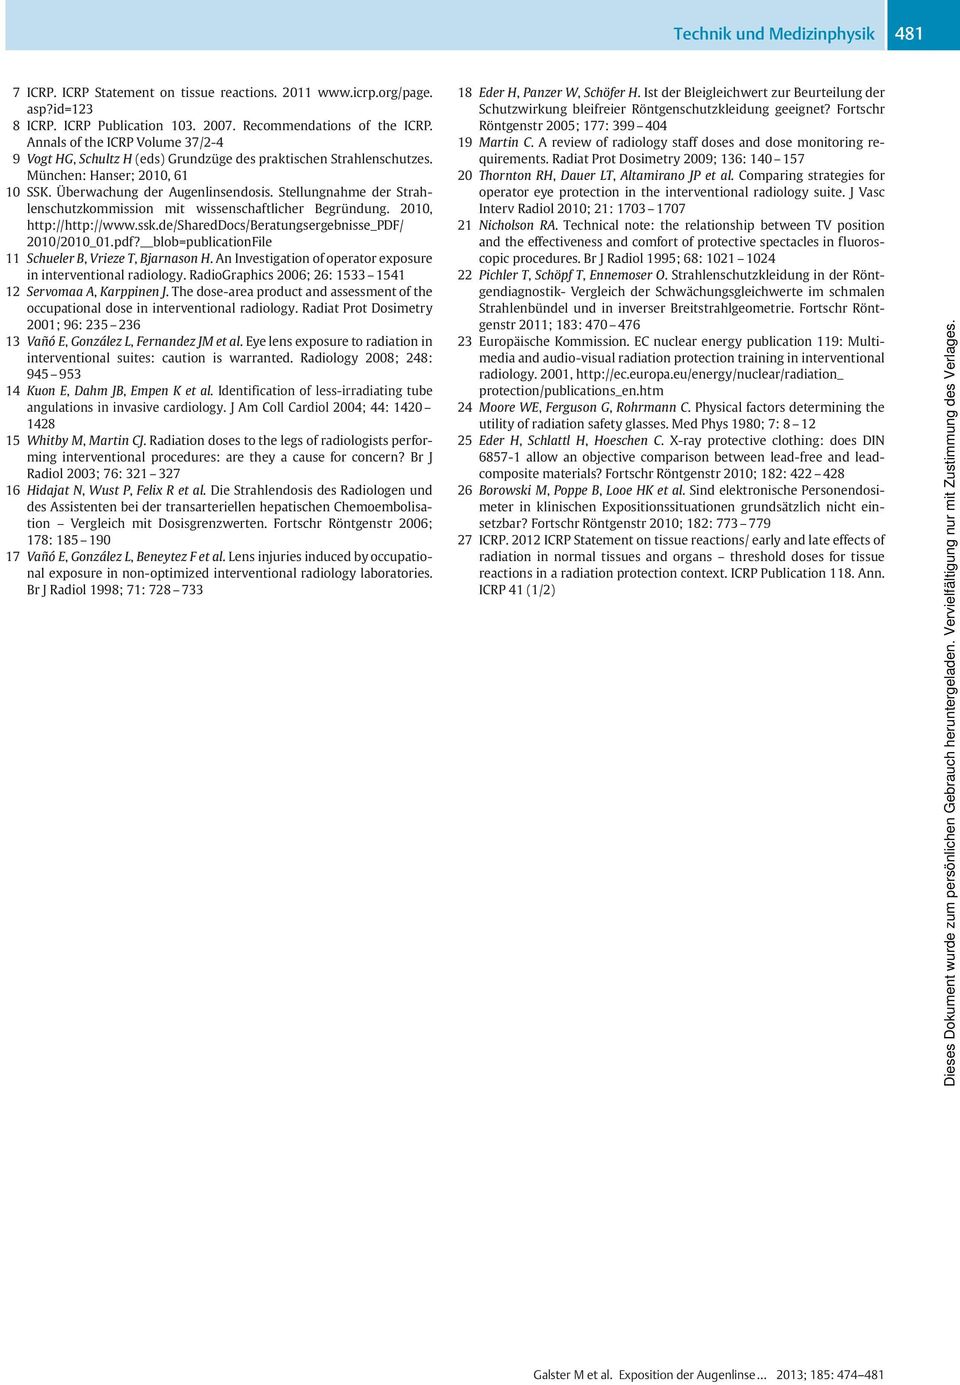 Stellungnahme der Strahlenschutzkommission mit wissenschaftlicher Begründung. 2010, http://http://www.ssk.de/shareddocs/beratungsergebnisse_pdf/